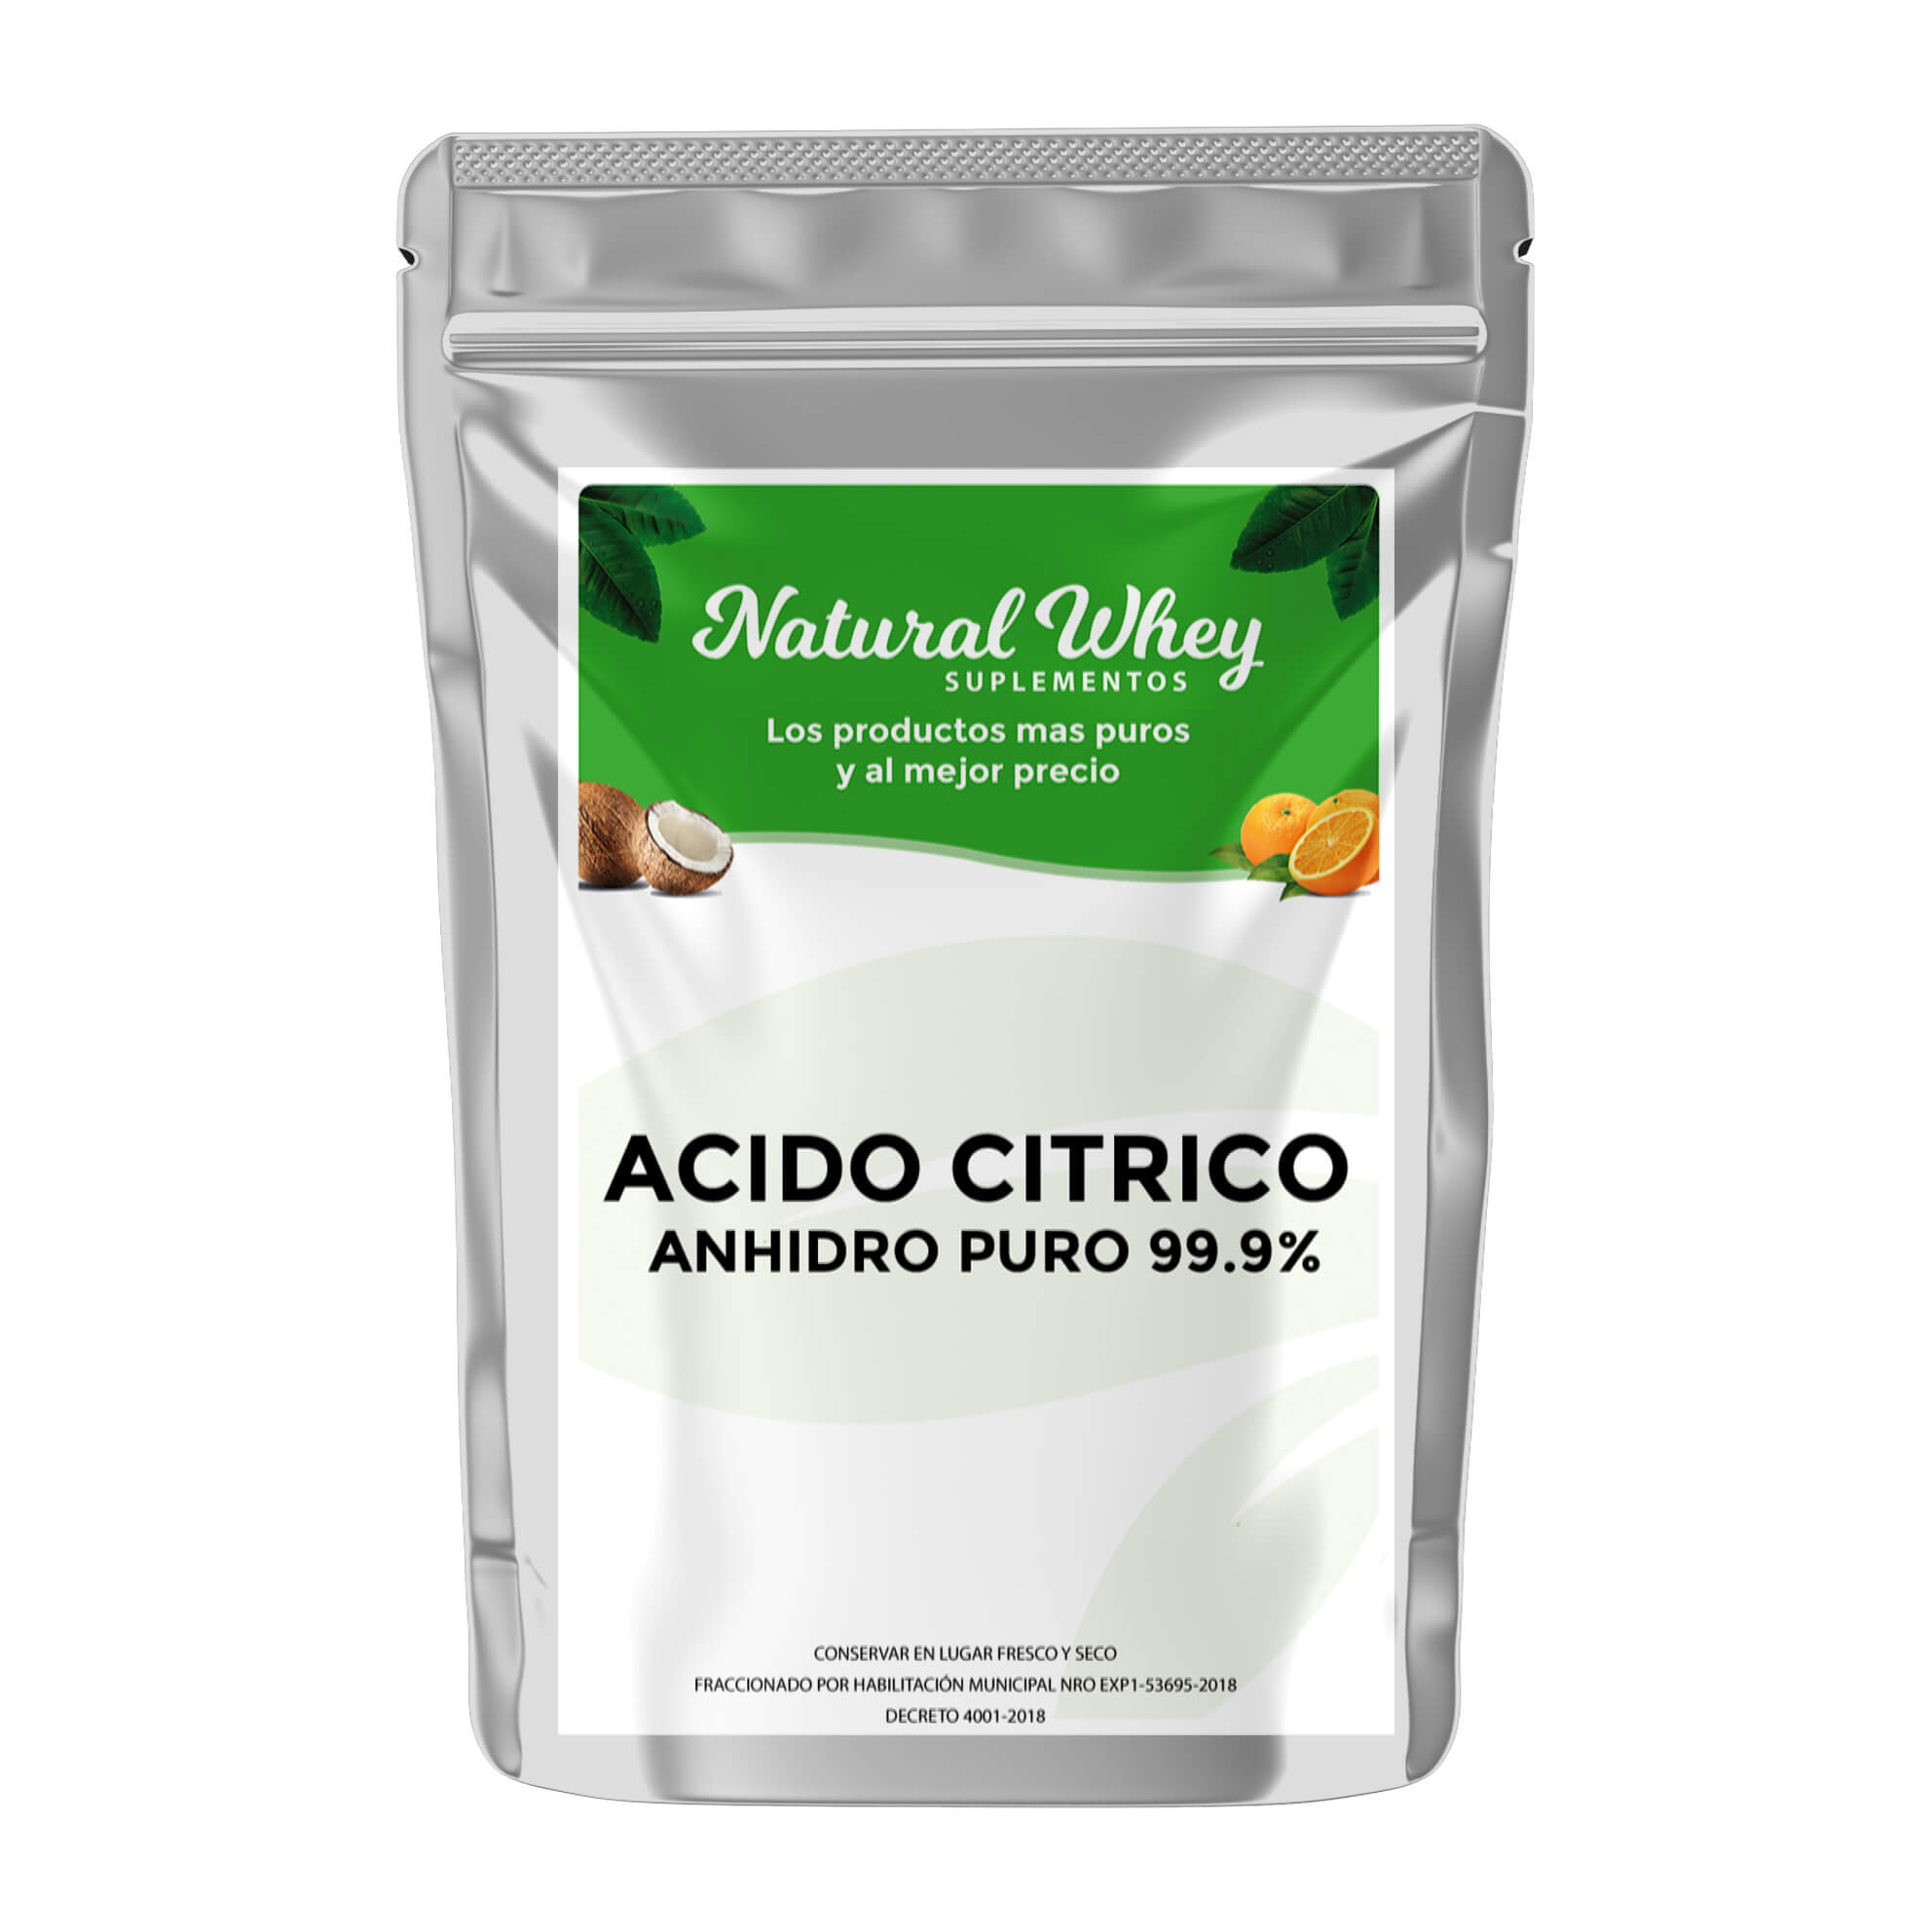 ACIDO CITRICO ANHIDRO PURO 99.9% – Natural Whey Suplementos